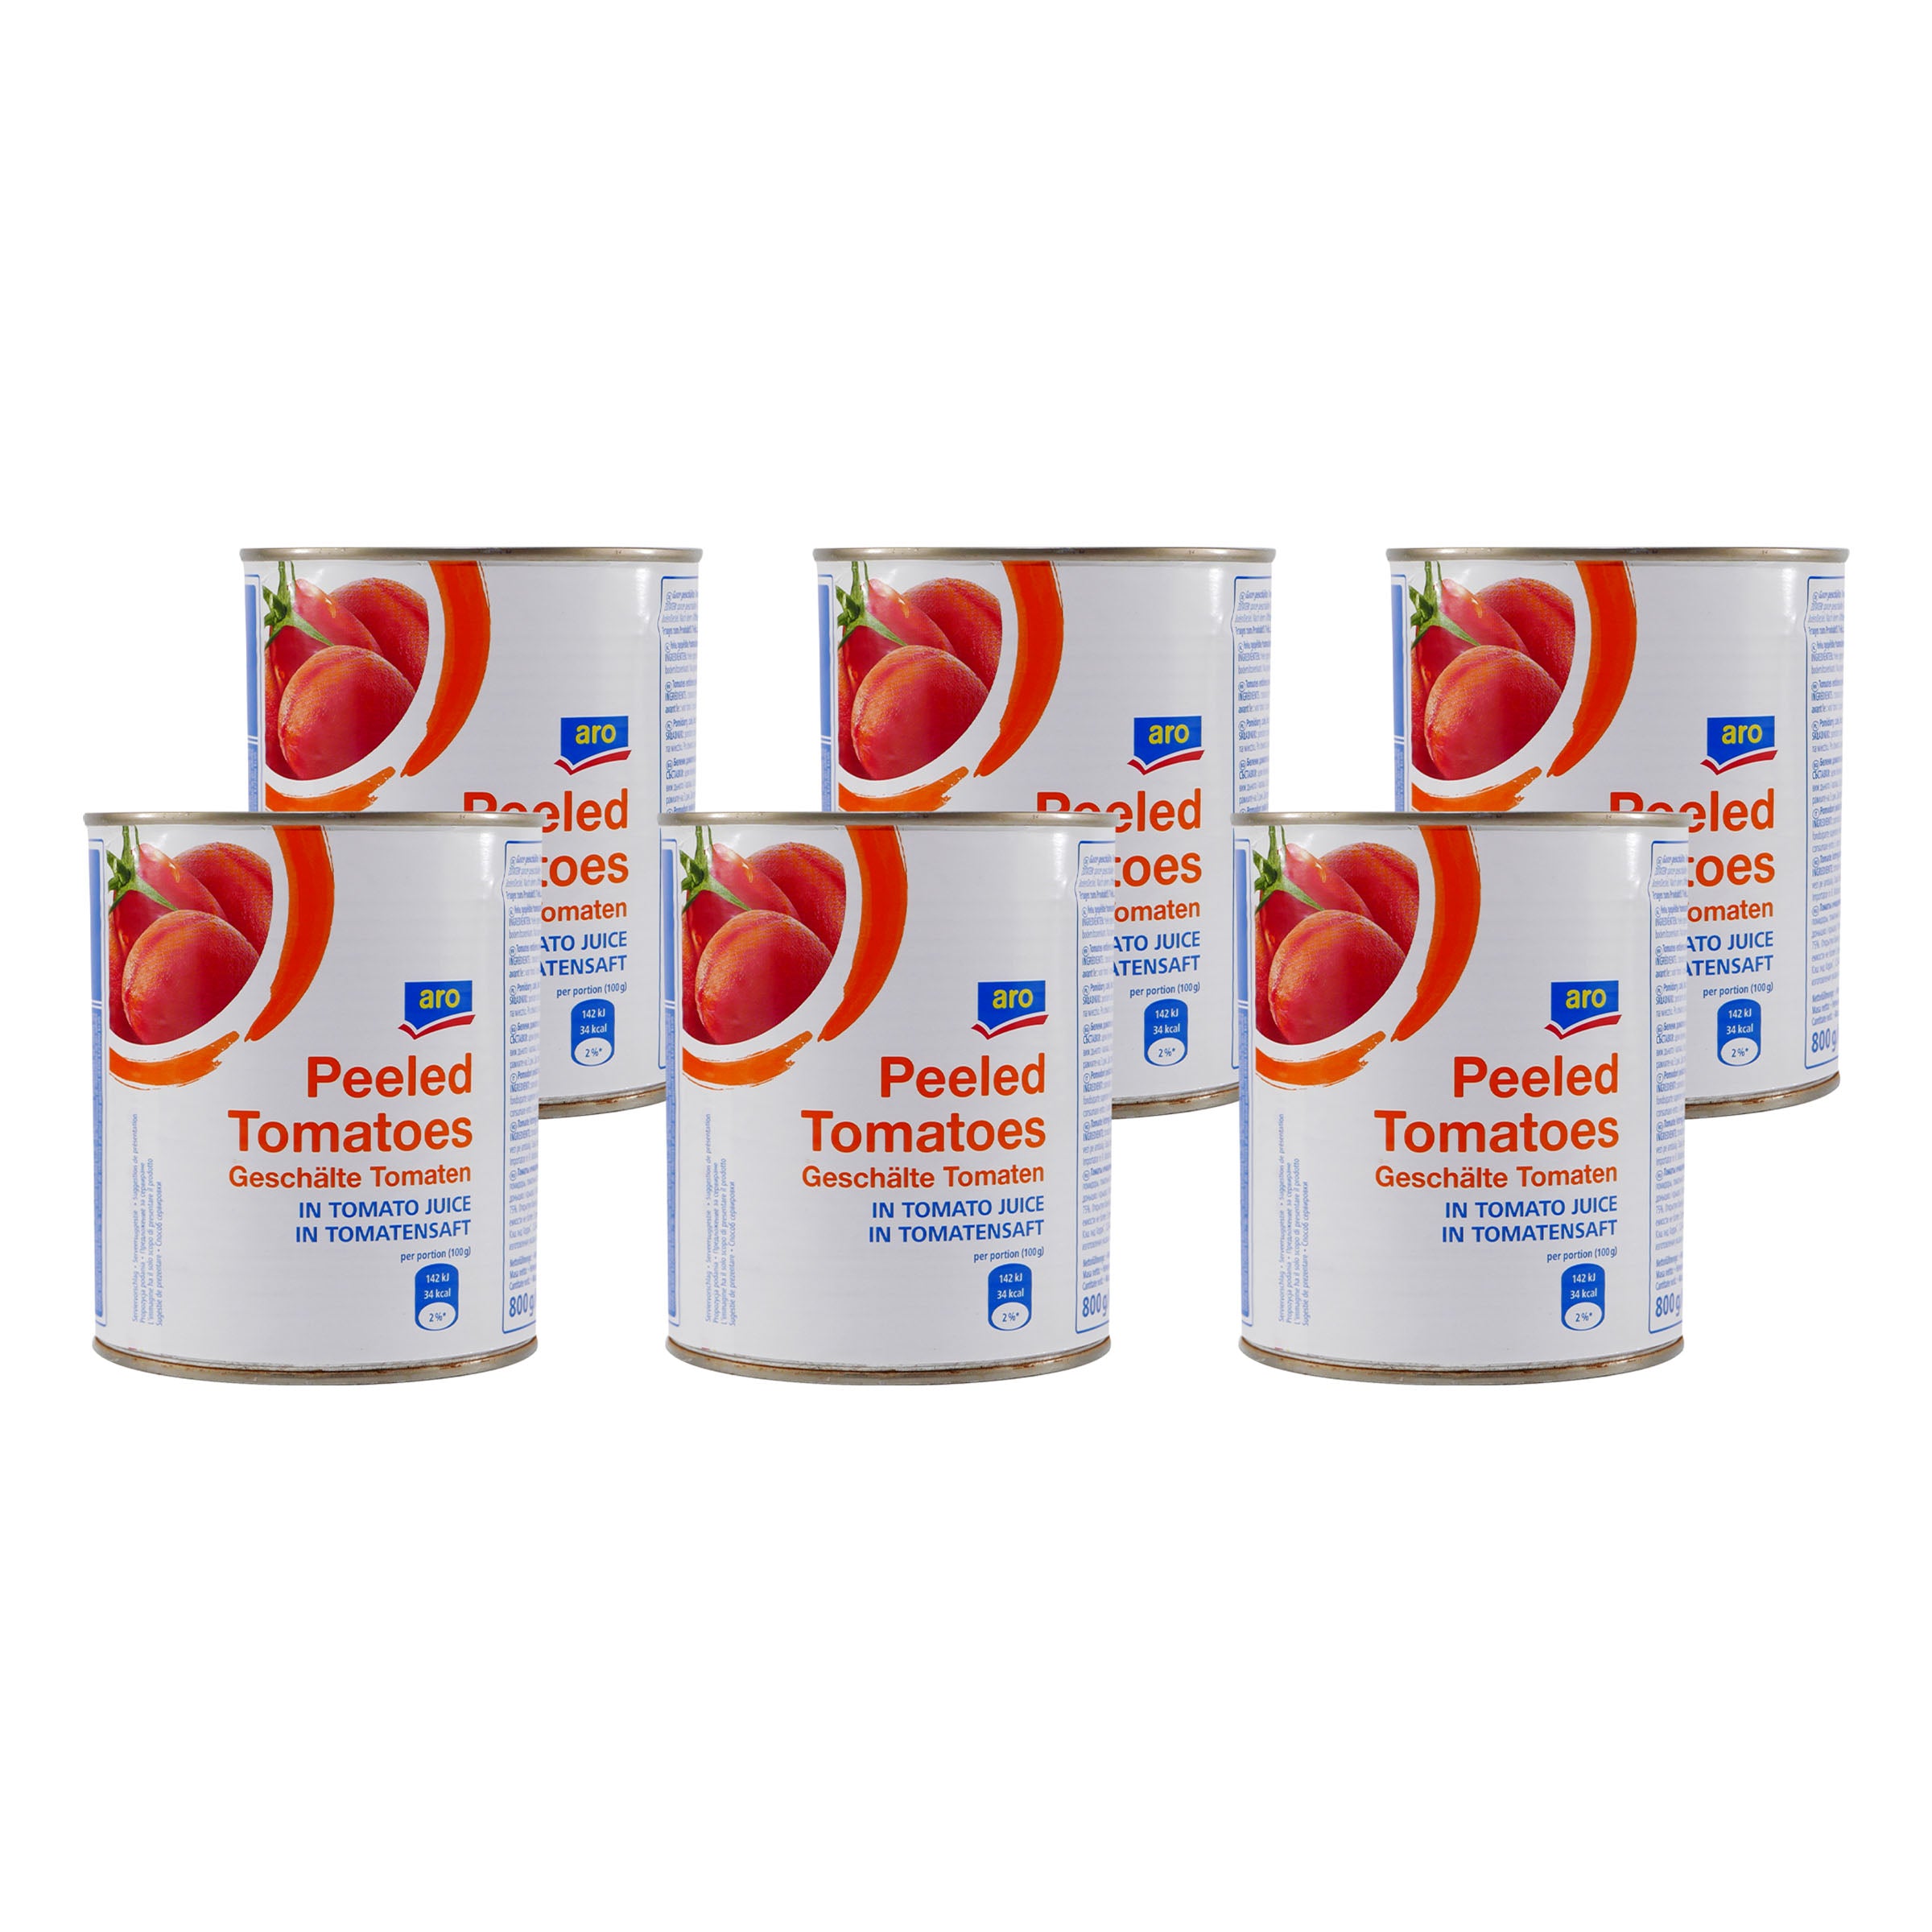 aro Ganze geschälte Tomaten (6 x 800g)